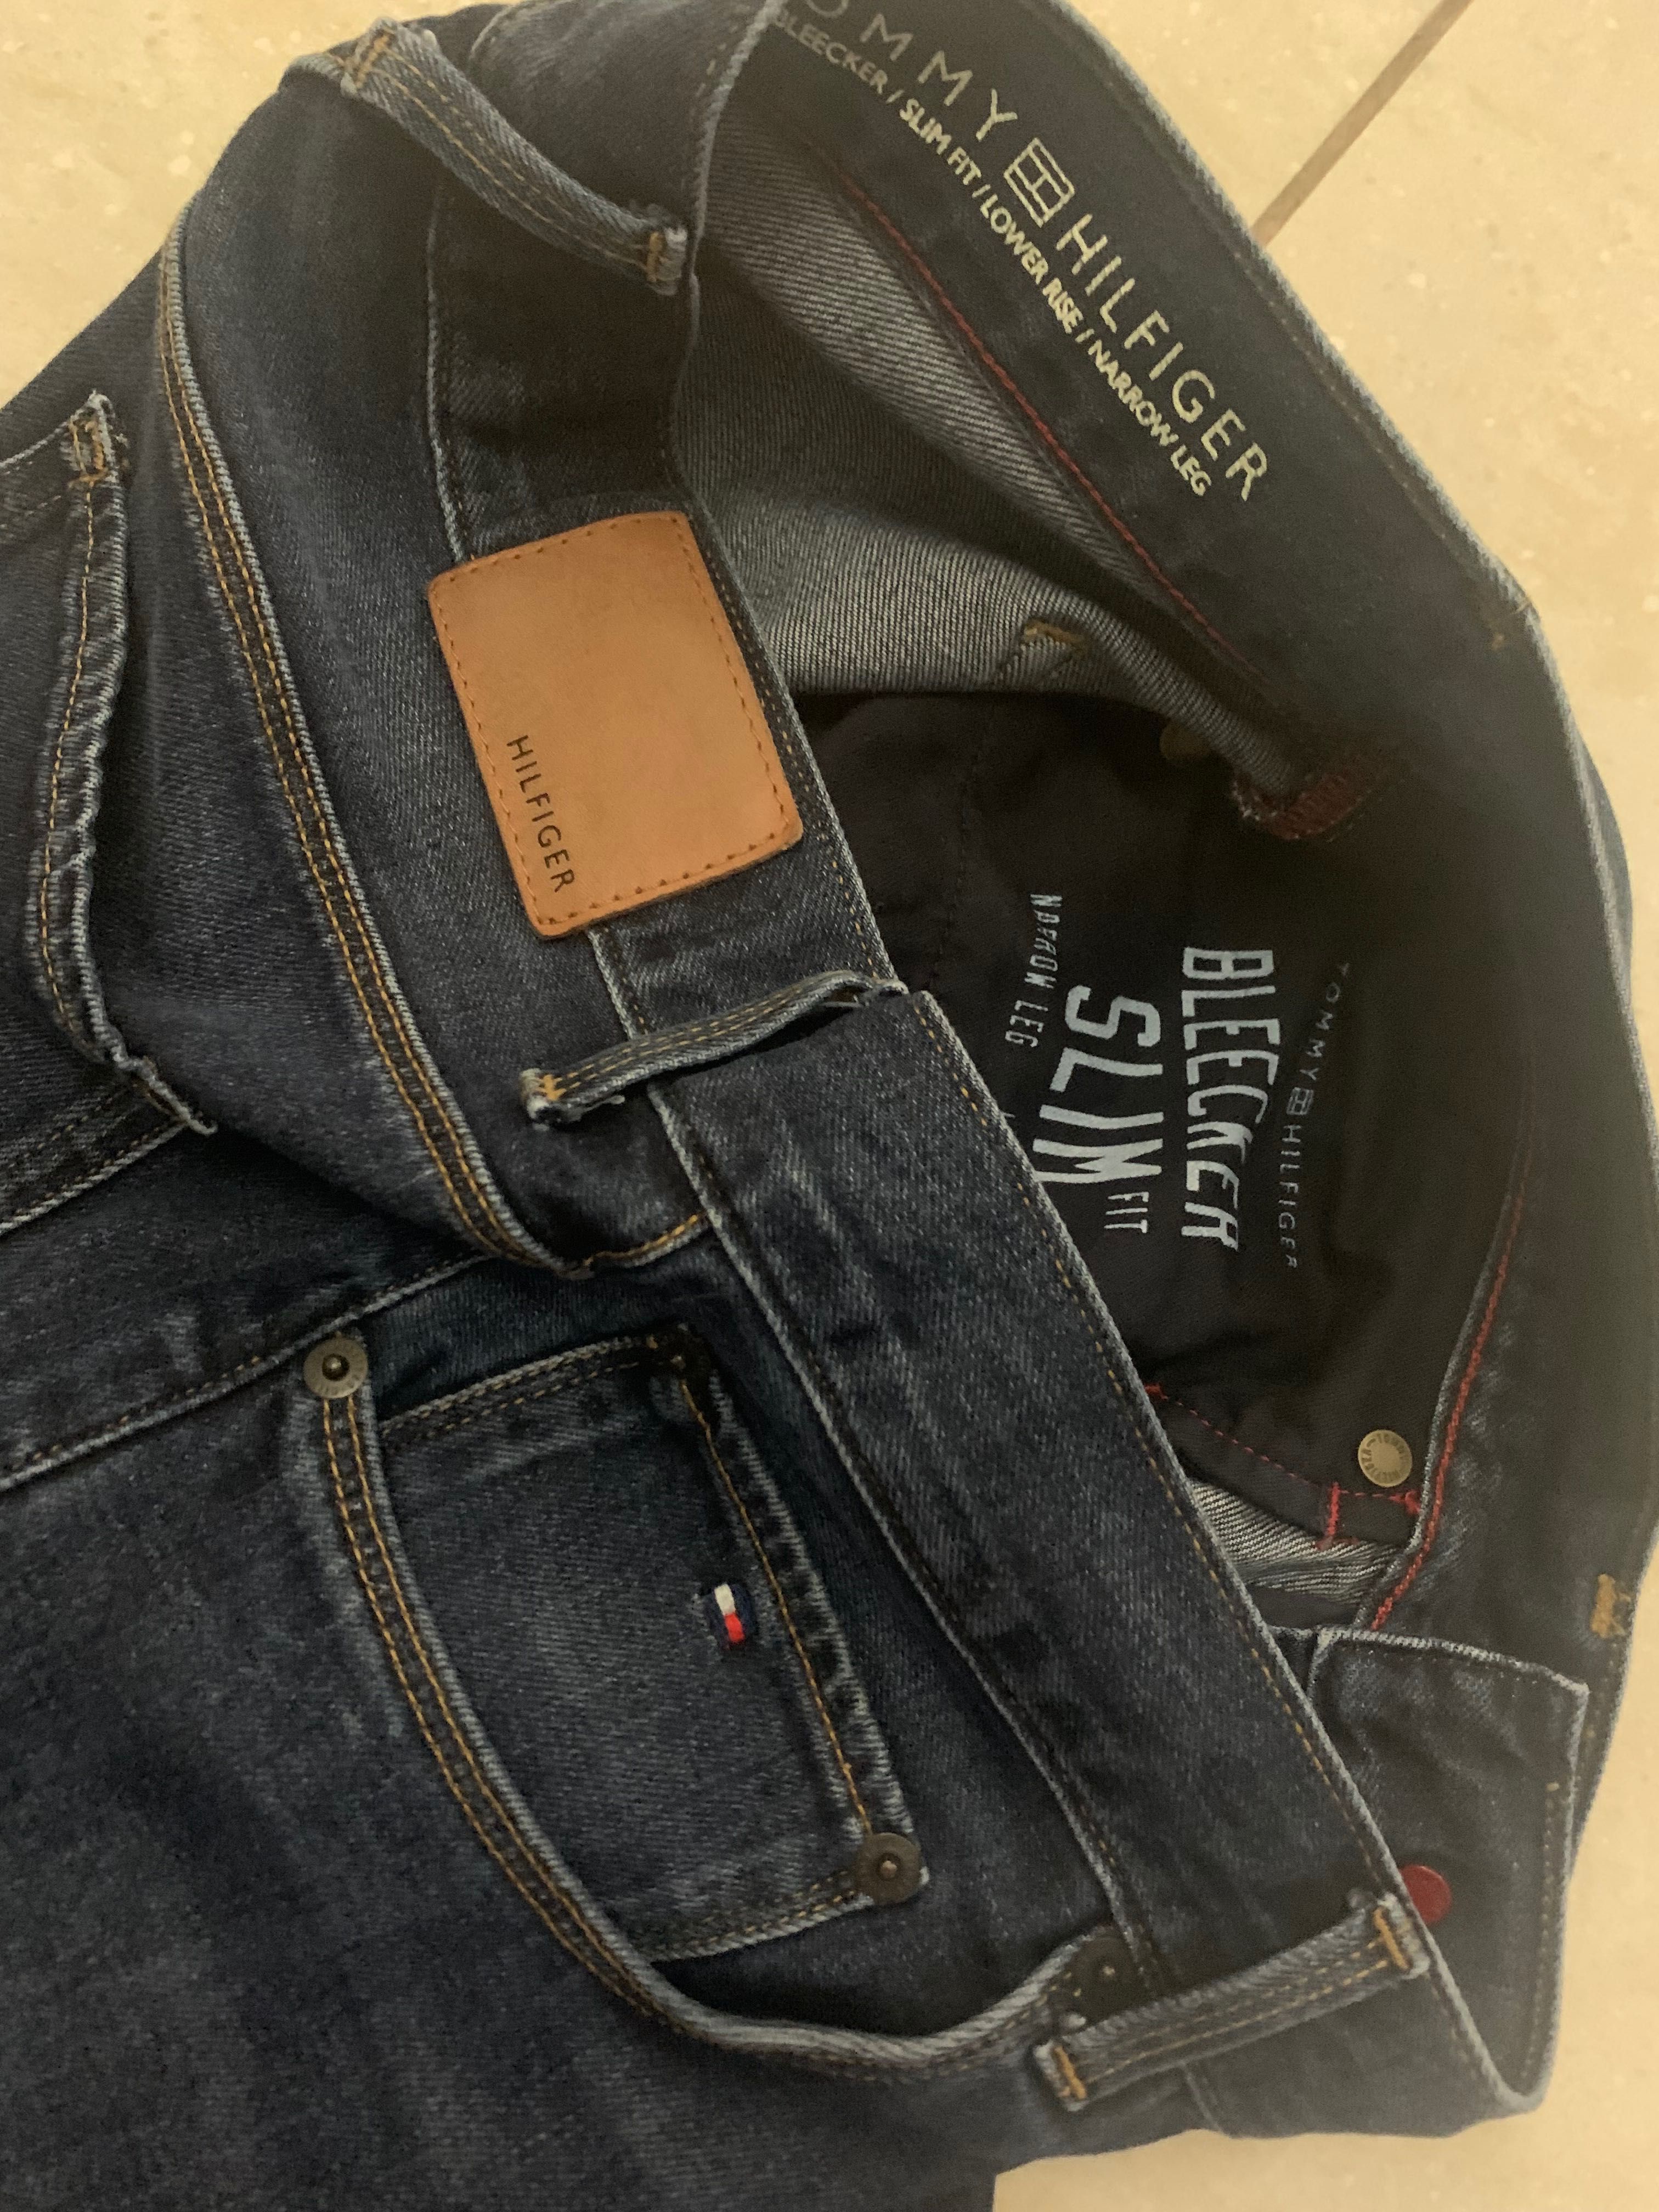 Tommy Hilfiger slim fit sexi spodnie damskie jeans  31/32, wysoki stan